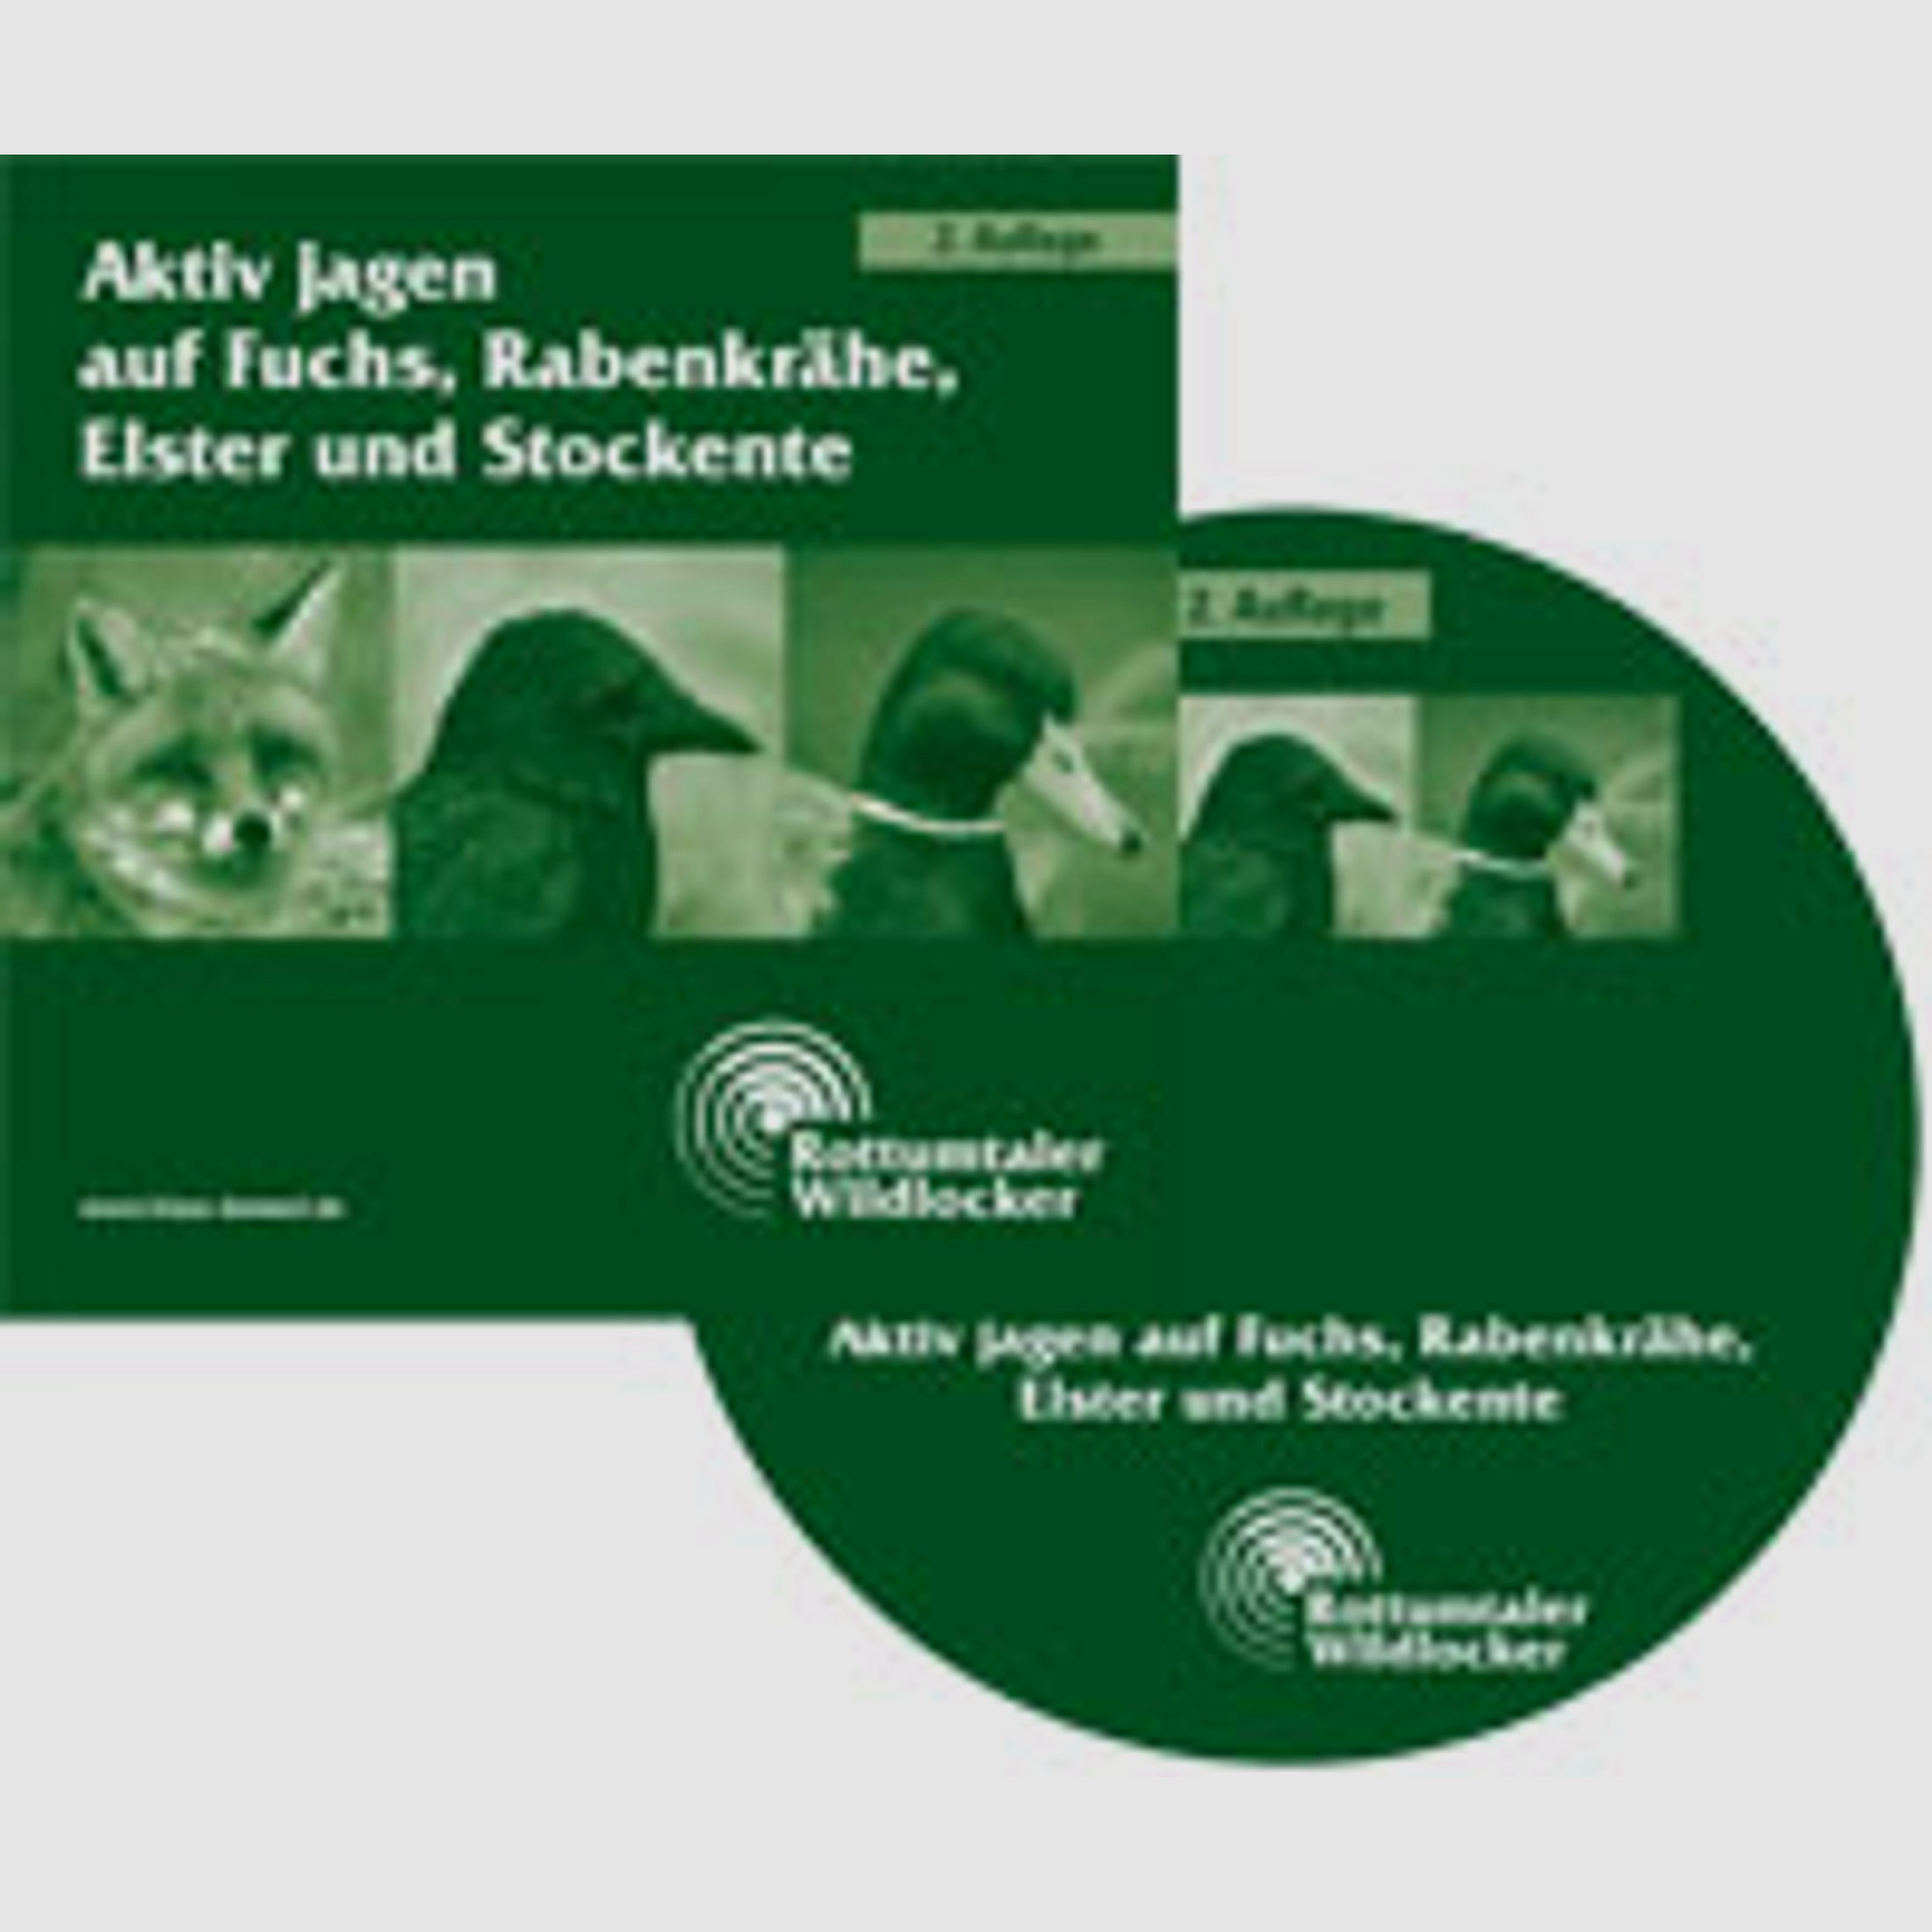 Lock & Reizjagd CD "Aktiv Jagen auf Fuchs Rabenkrähe Elster &amp; Stockente"